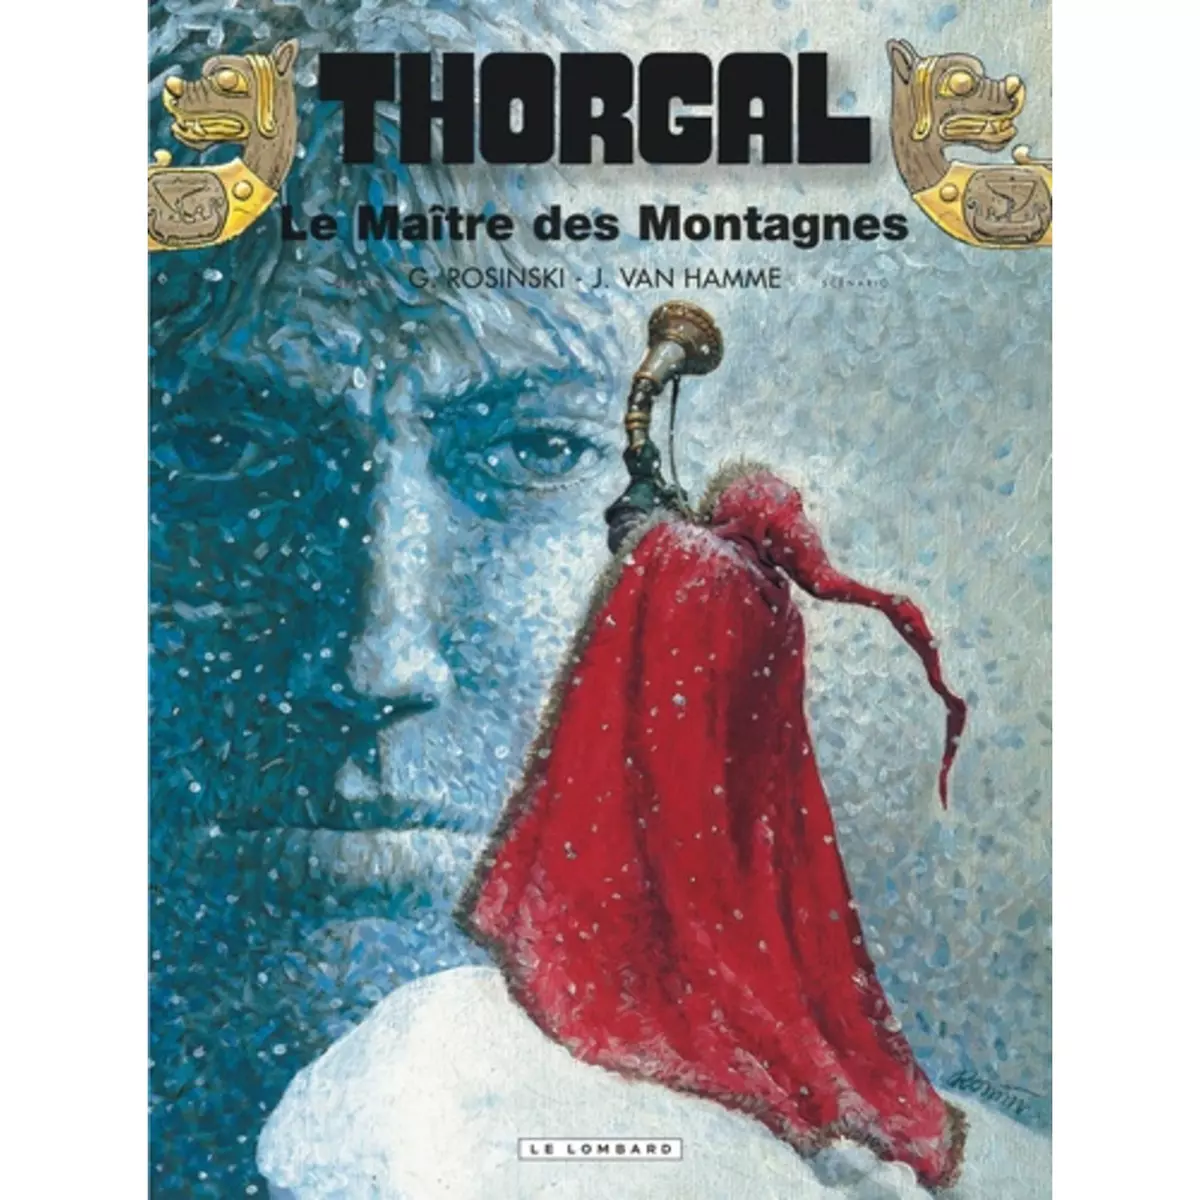  THORGAL TOME 15 : LE MAITRE DES MONTAGNES, Van Hamme Jean